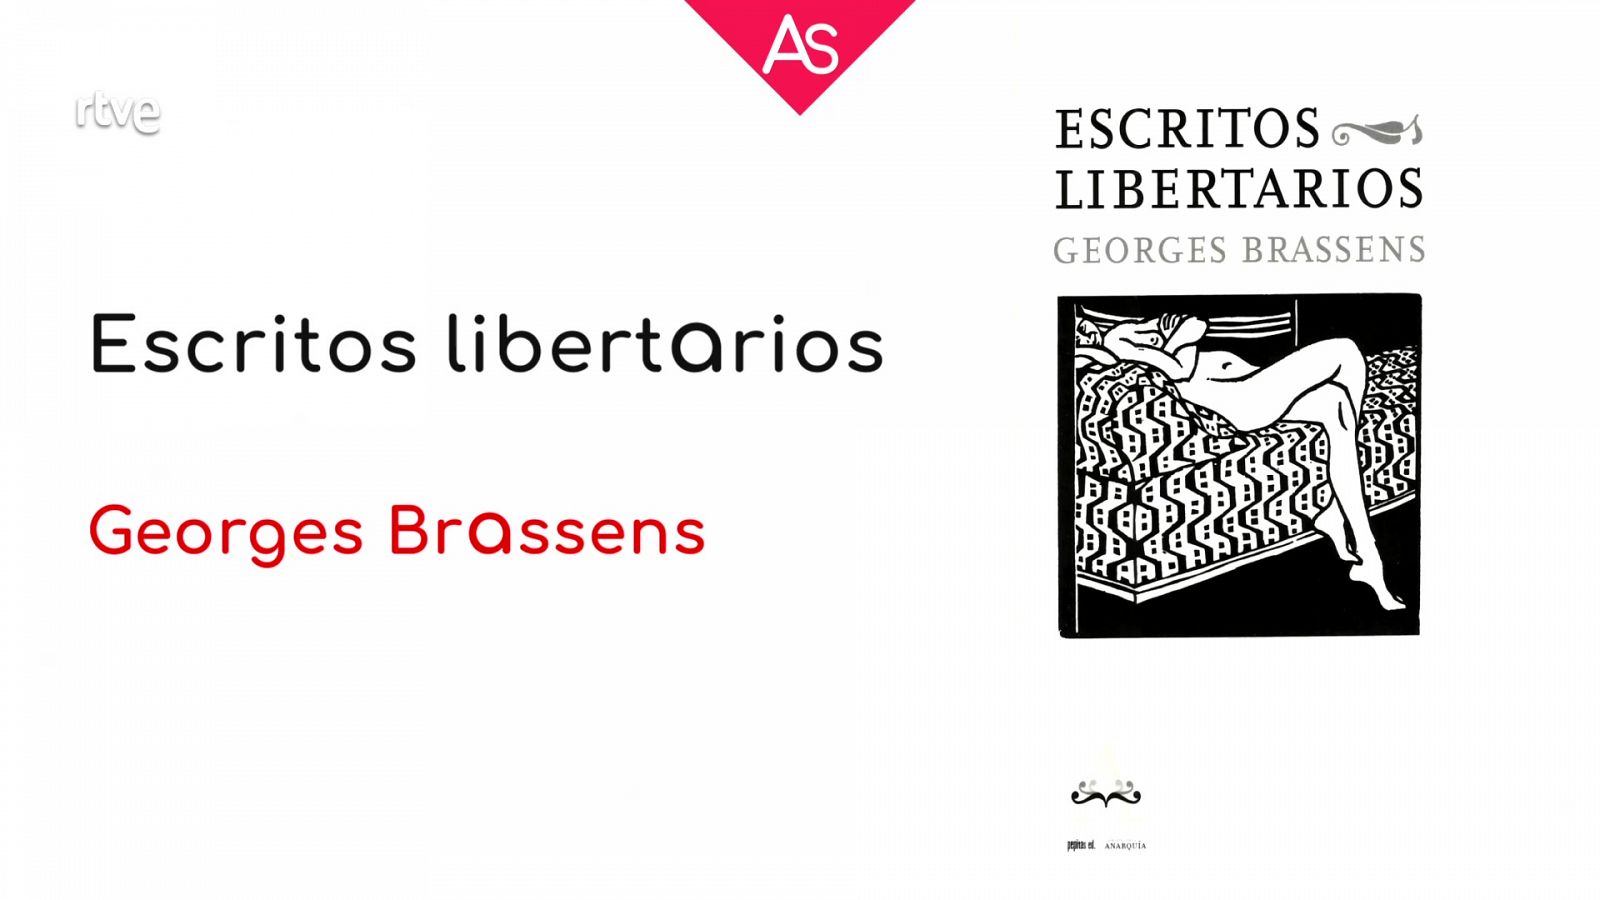 Reseñamos 'Escritos libertarios' (2021), de Georges Brassens